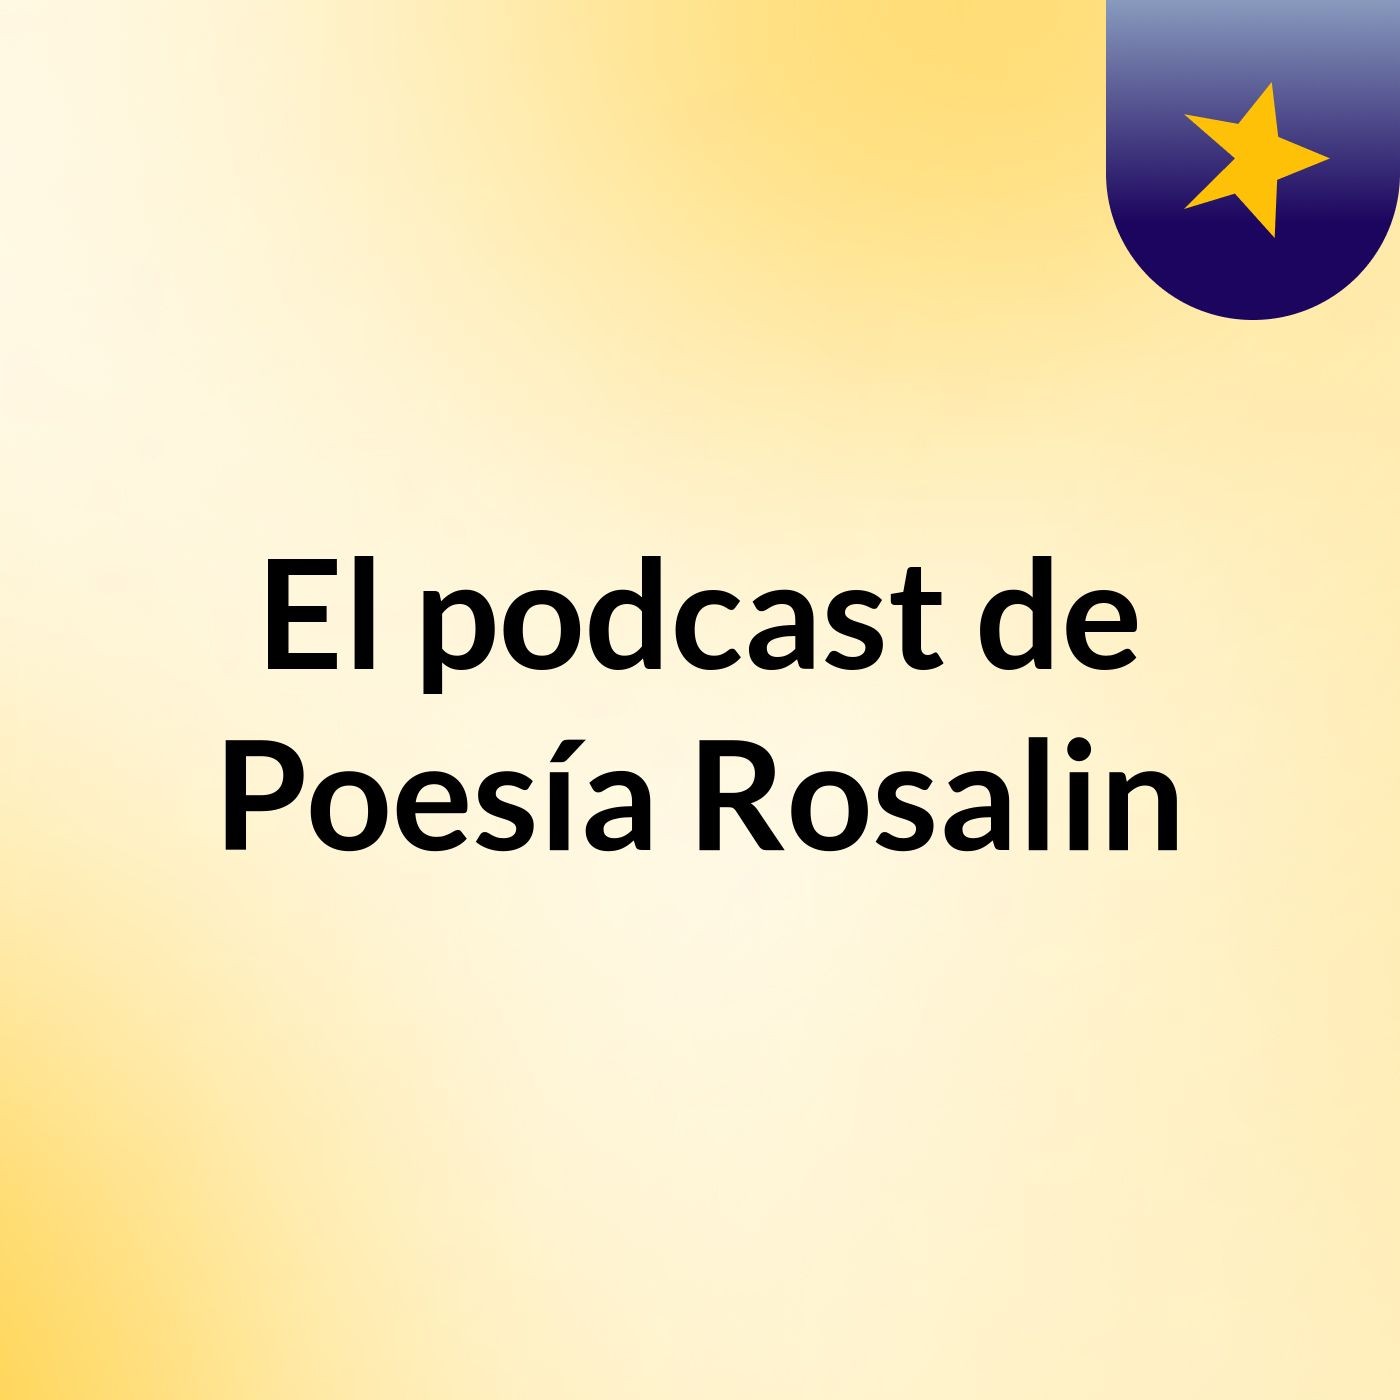 El podcast de Poesía Rosalin